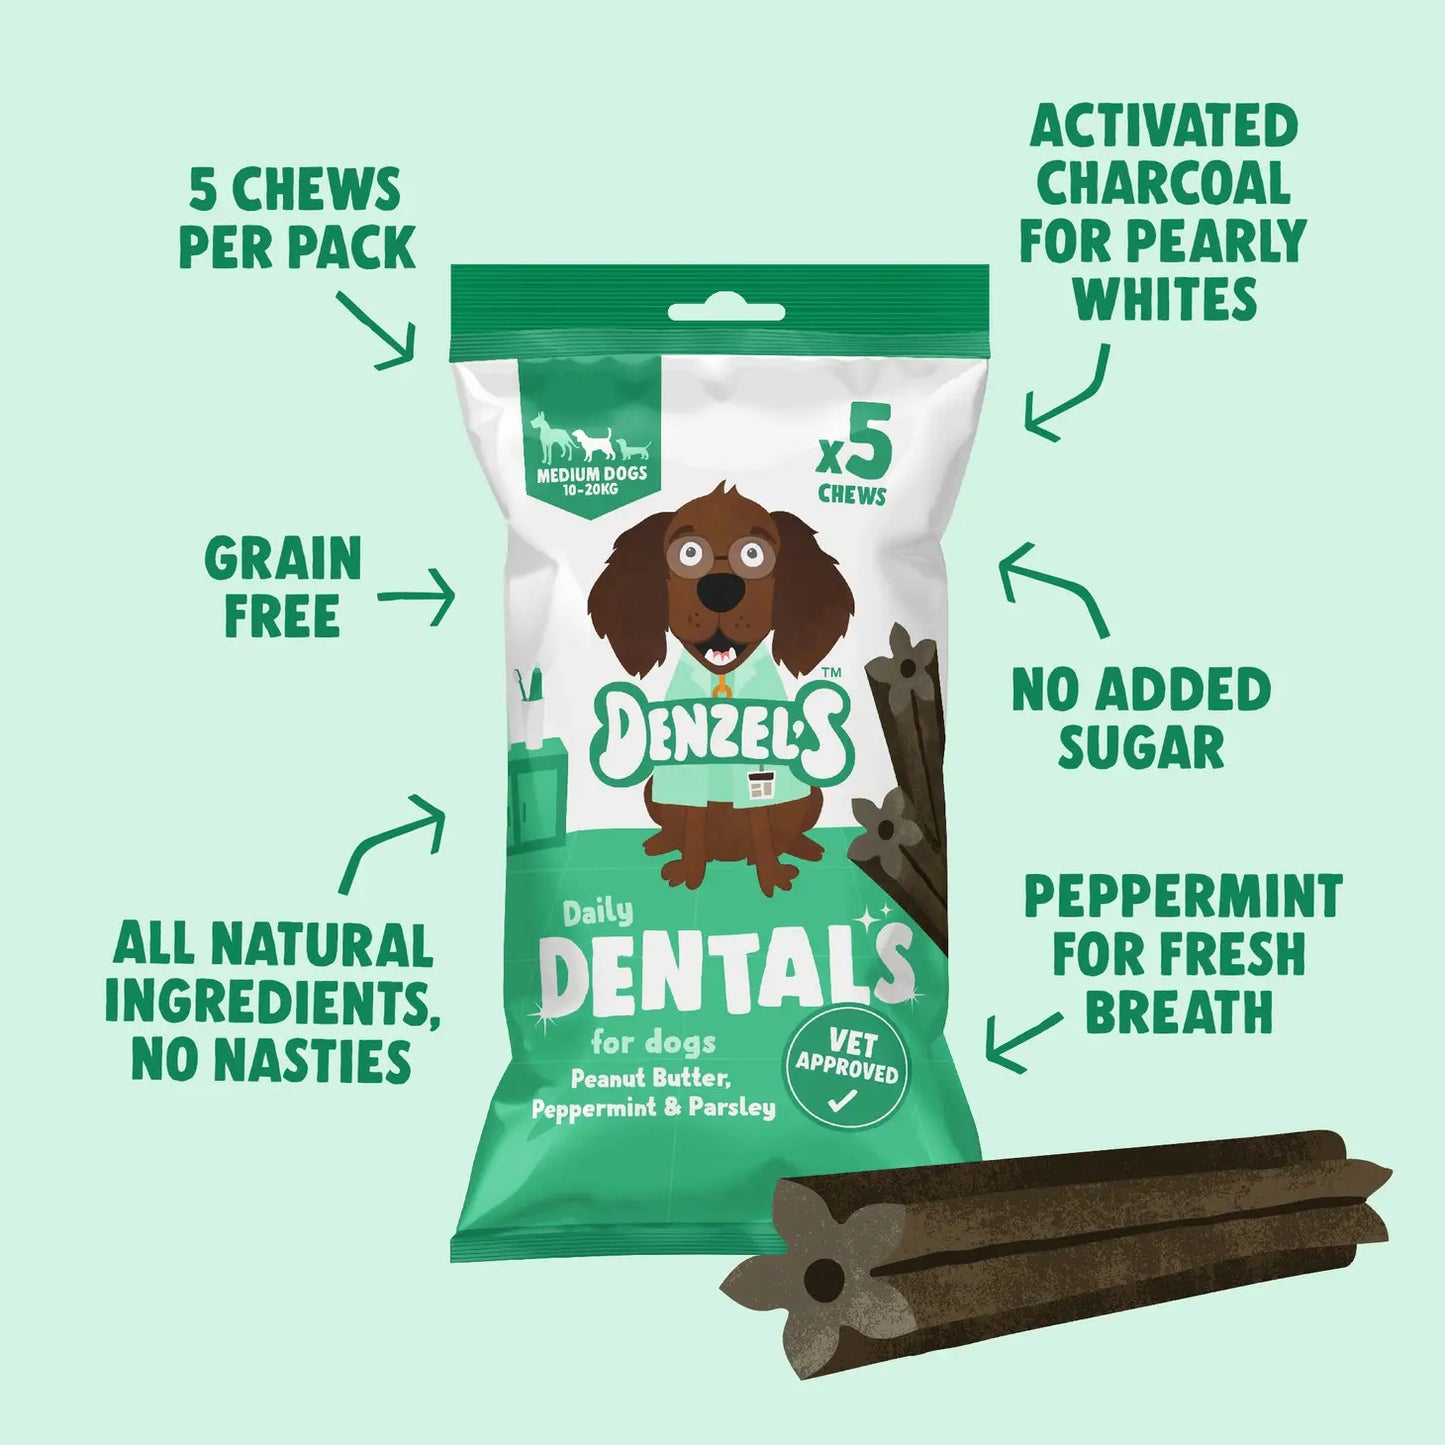 Denzel’s Medium Daily Dentals